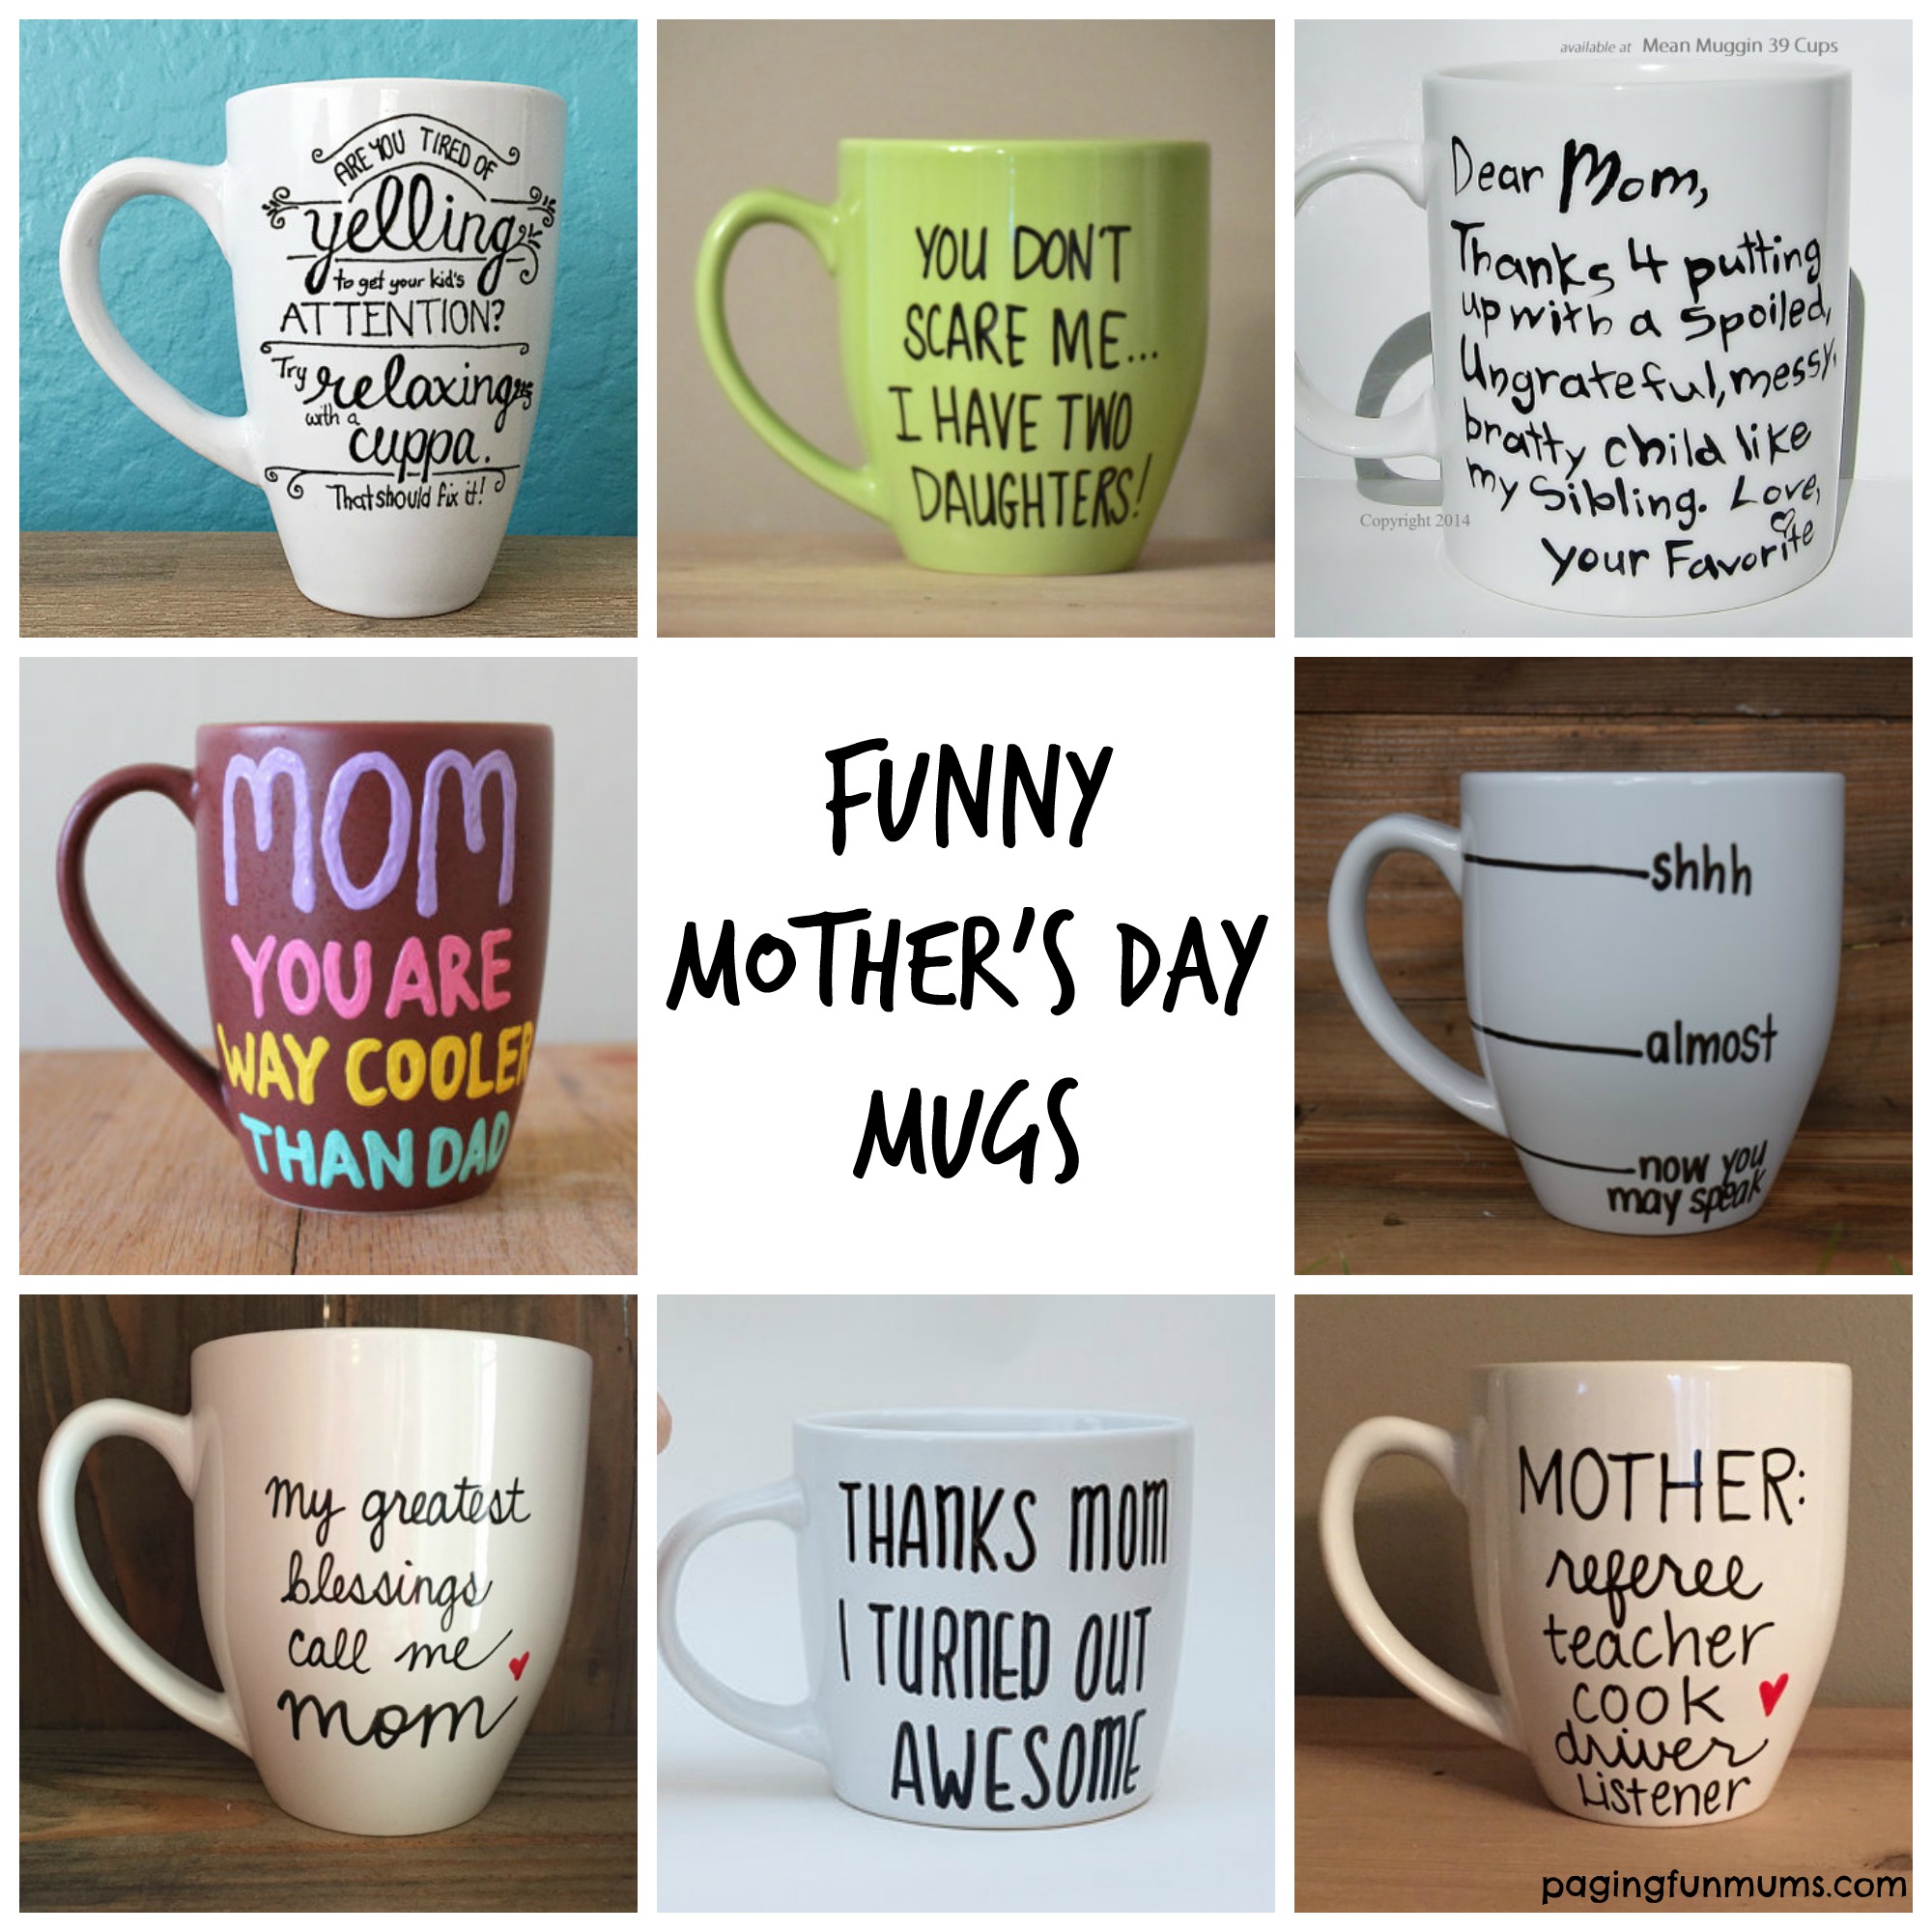 Funny Mom Mug, Insulated Coffee Mug, Funny Mom Gift, Mothers Day